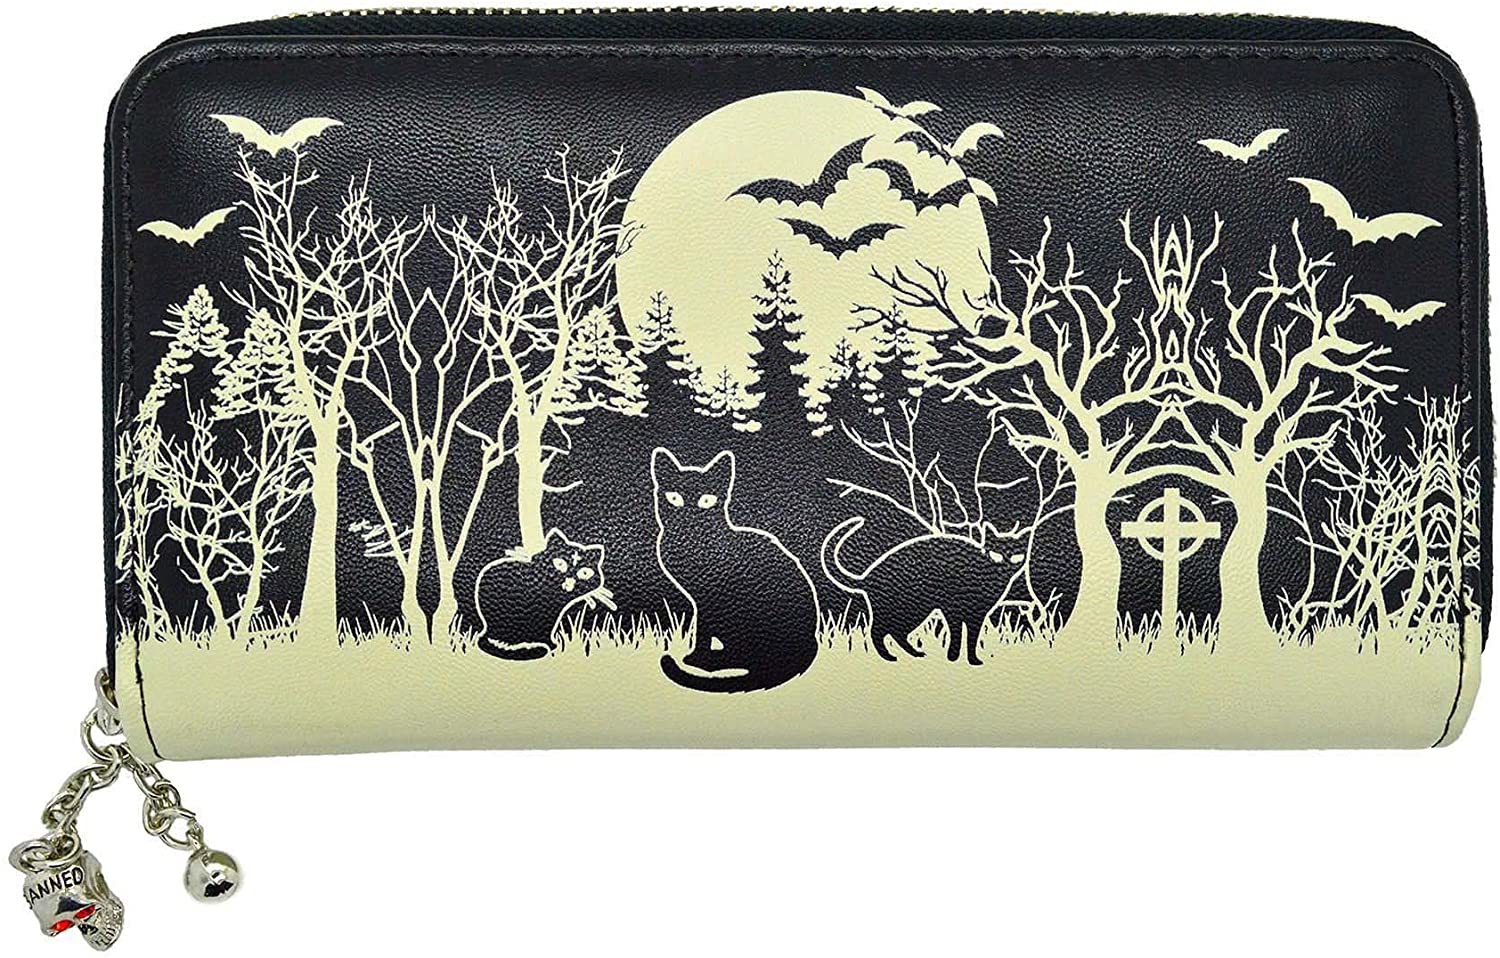 Lost Queen Woodland Wallet Black Cats & Bats Skull Charm Gothic Wiccan Vegan Zip Around Wallet